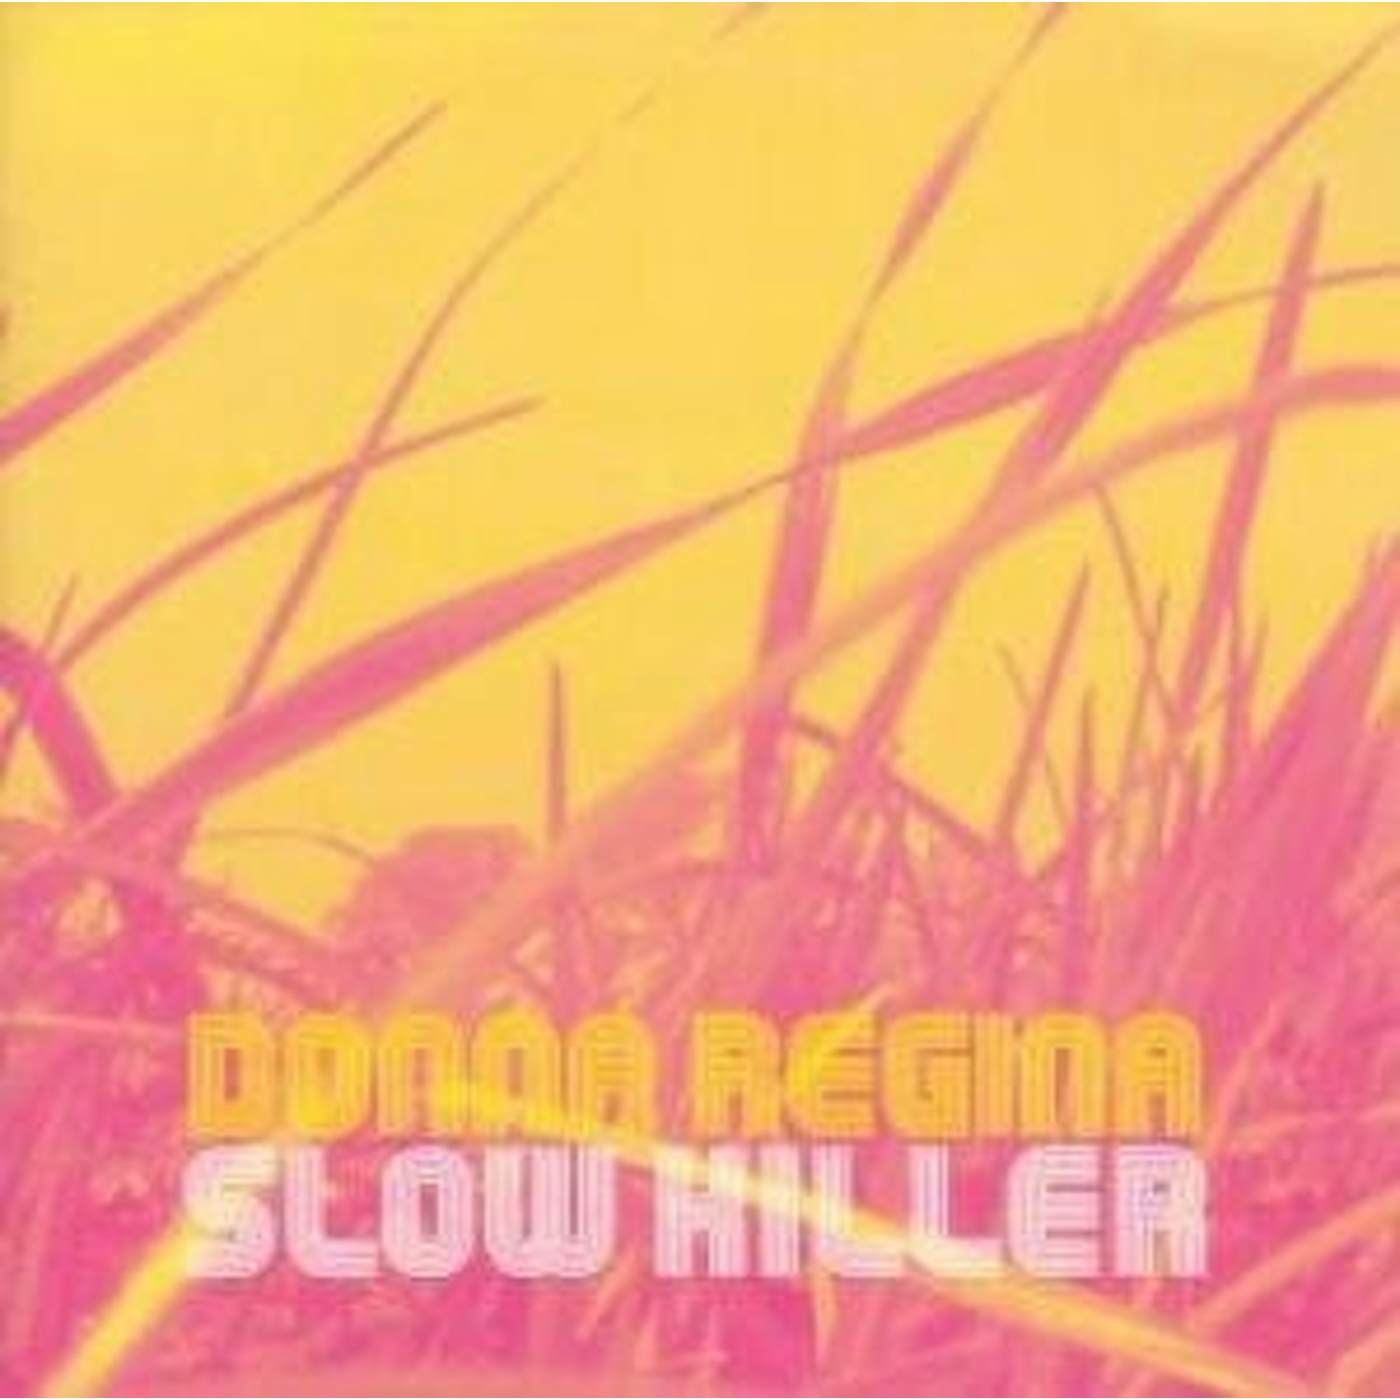 Donna Regina Slow Killer Vinyl Record